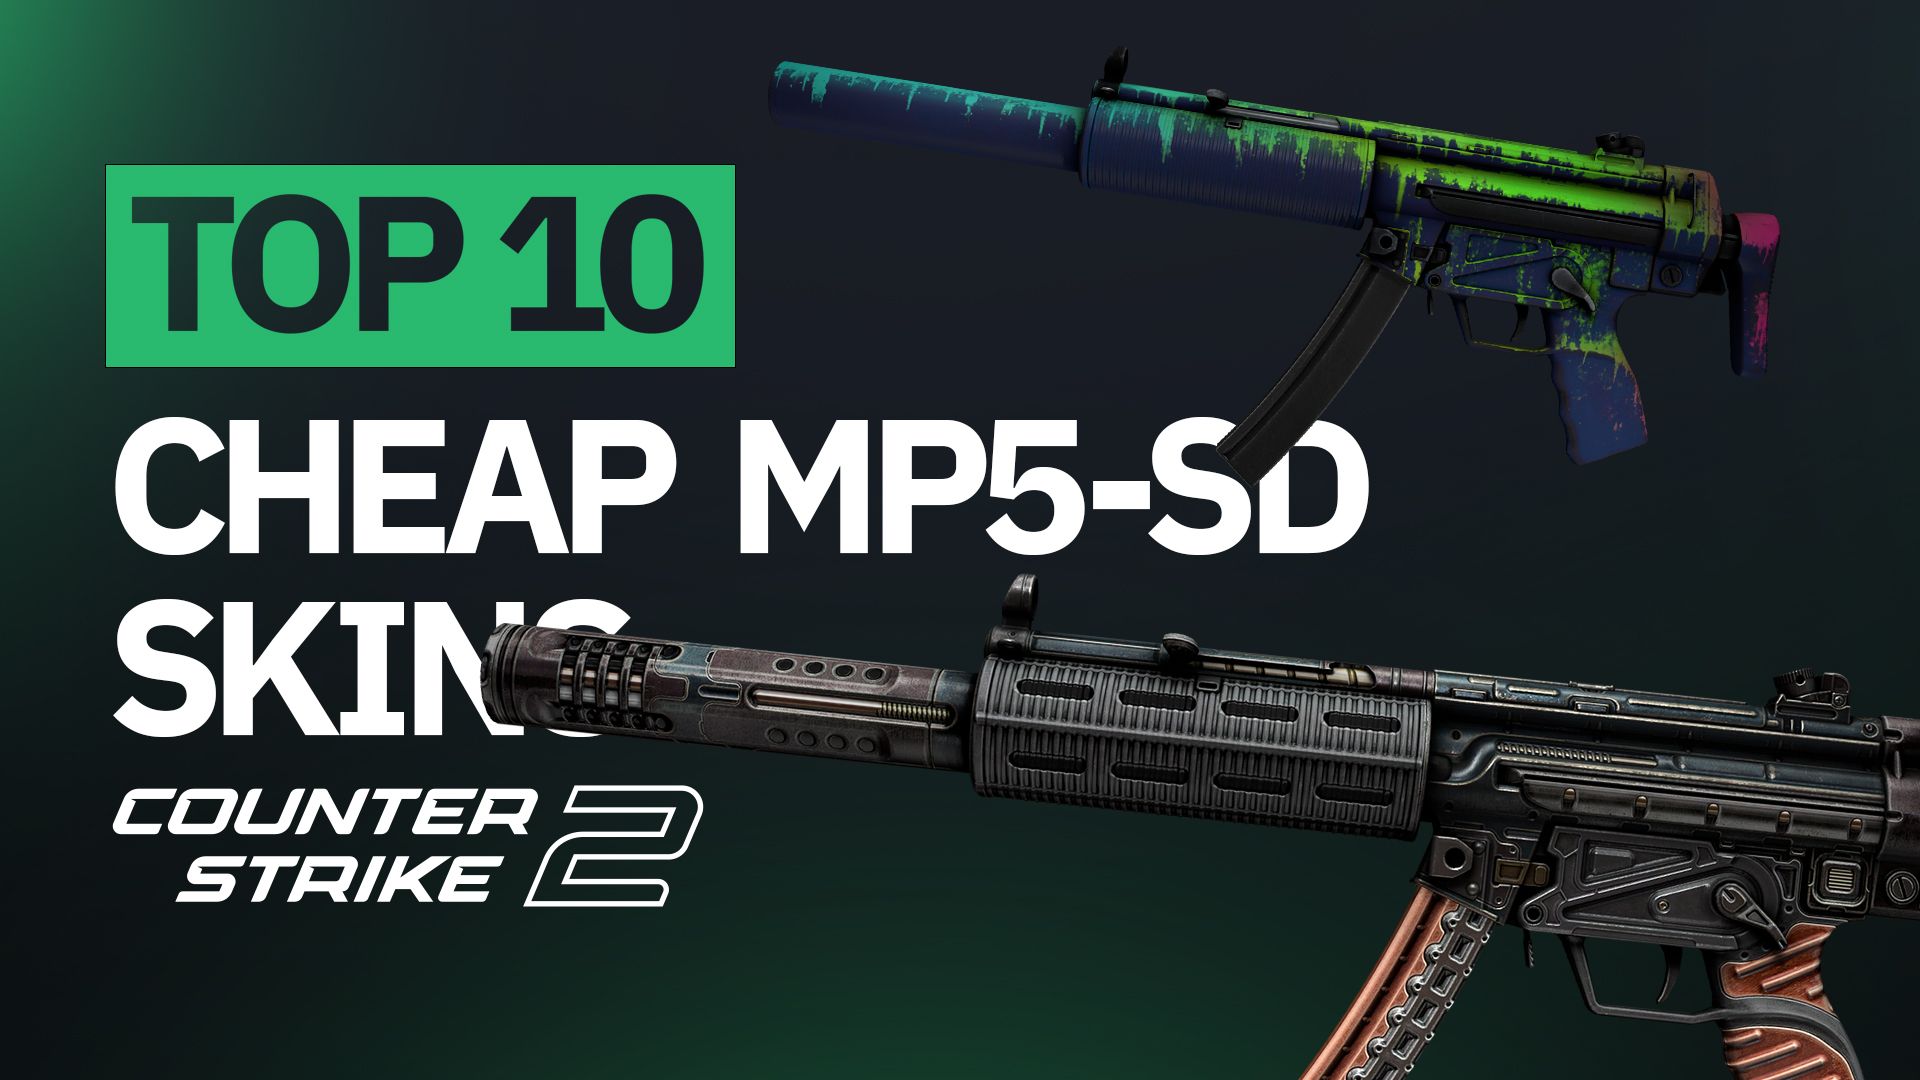 Top 10 Cheap MP5-SD Skins